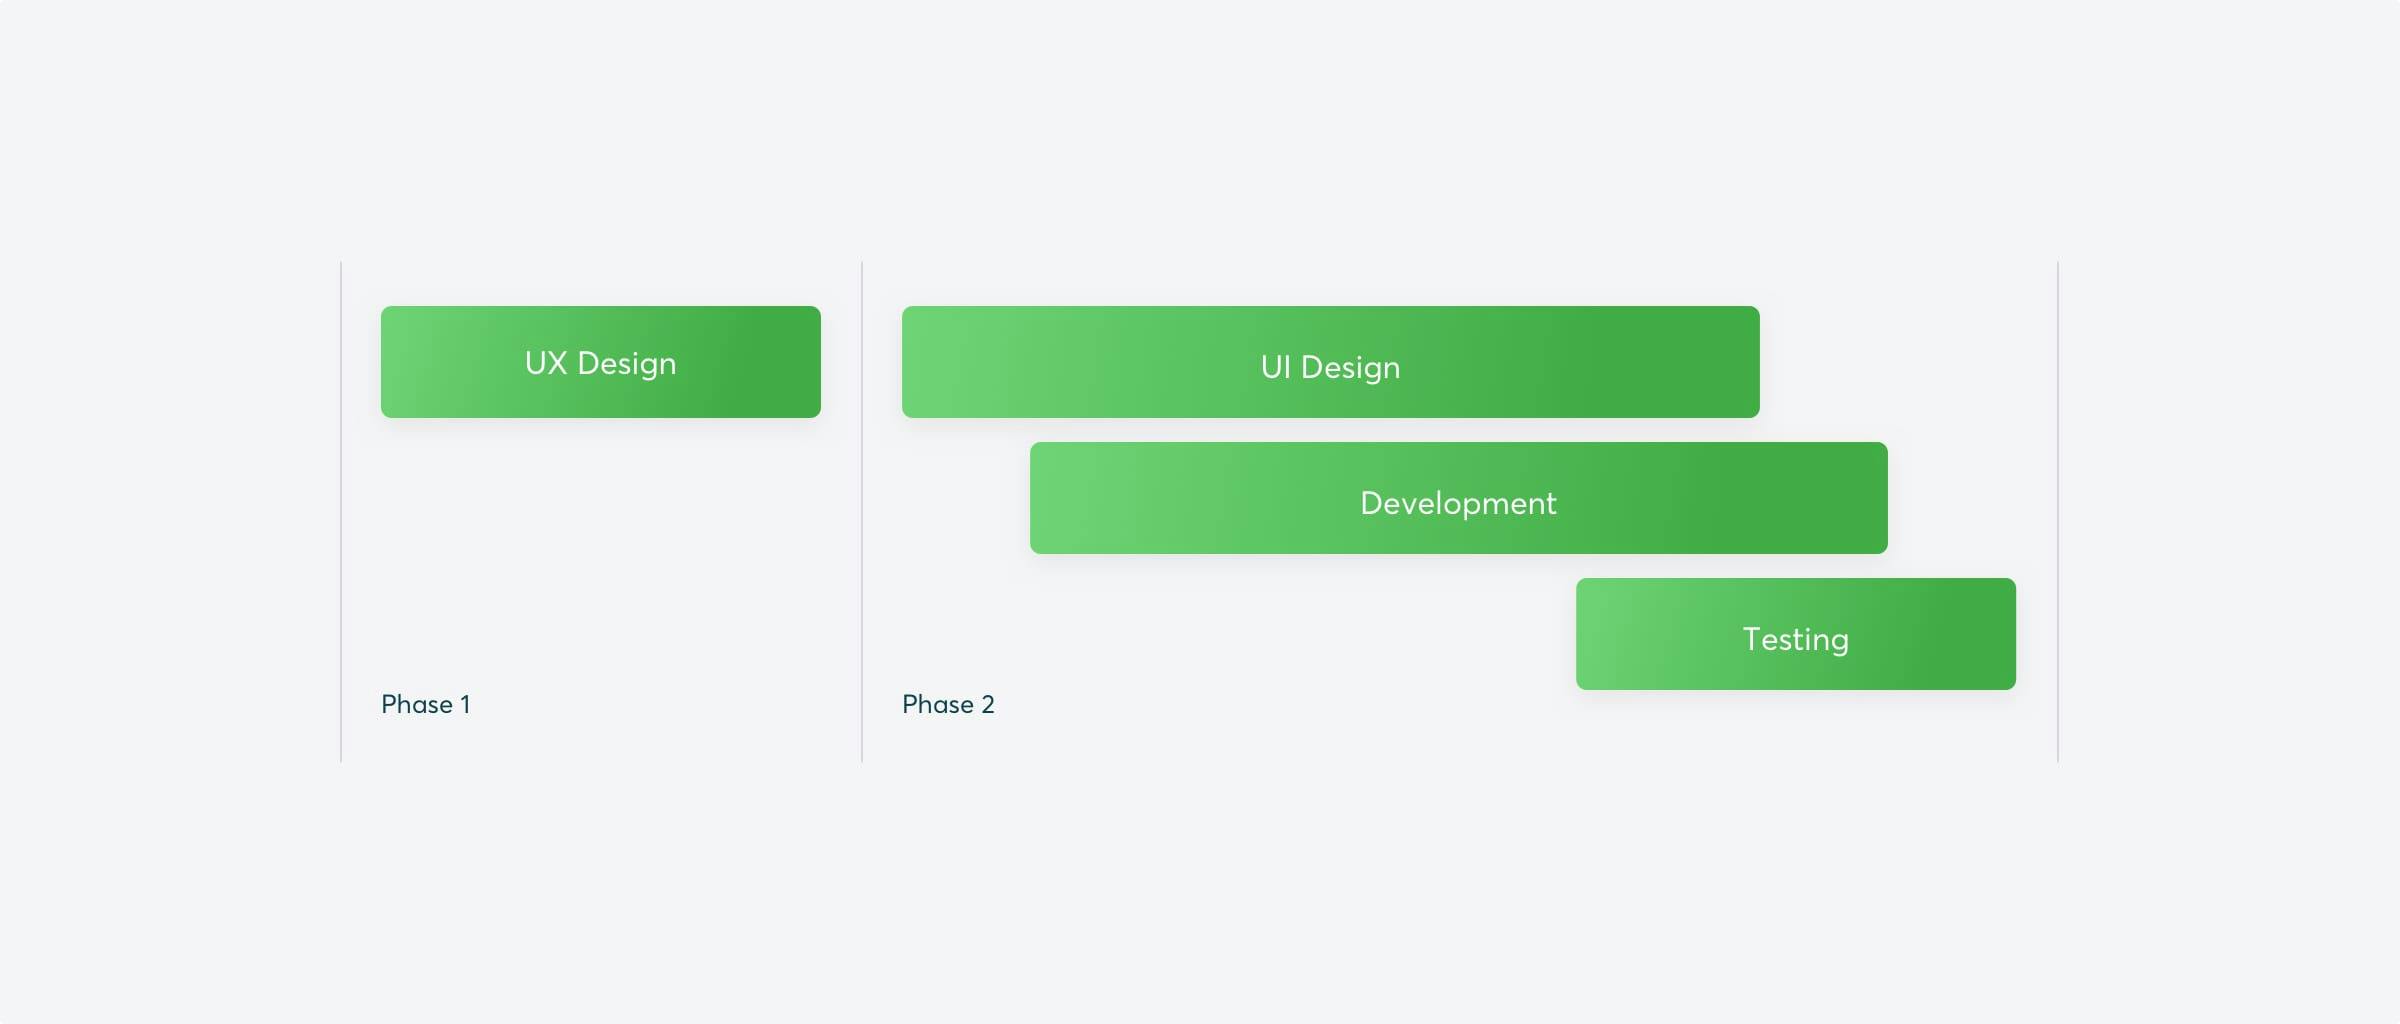 Project timeline, UX Design, UI Design, Development, Testing